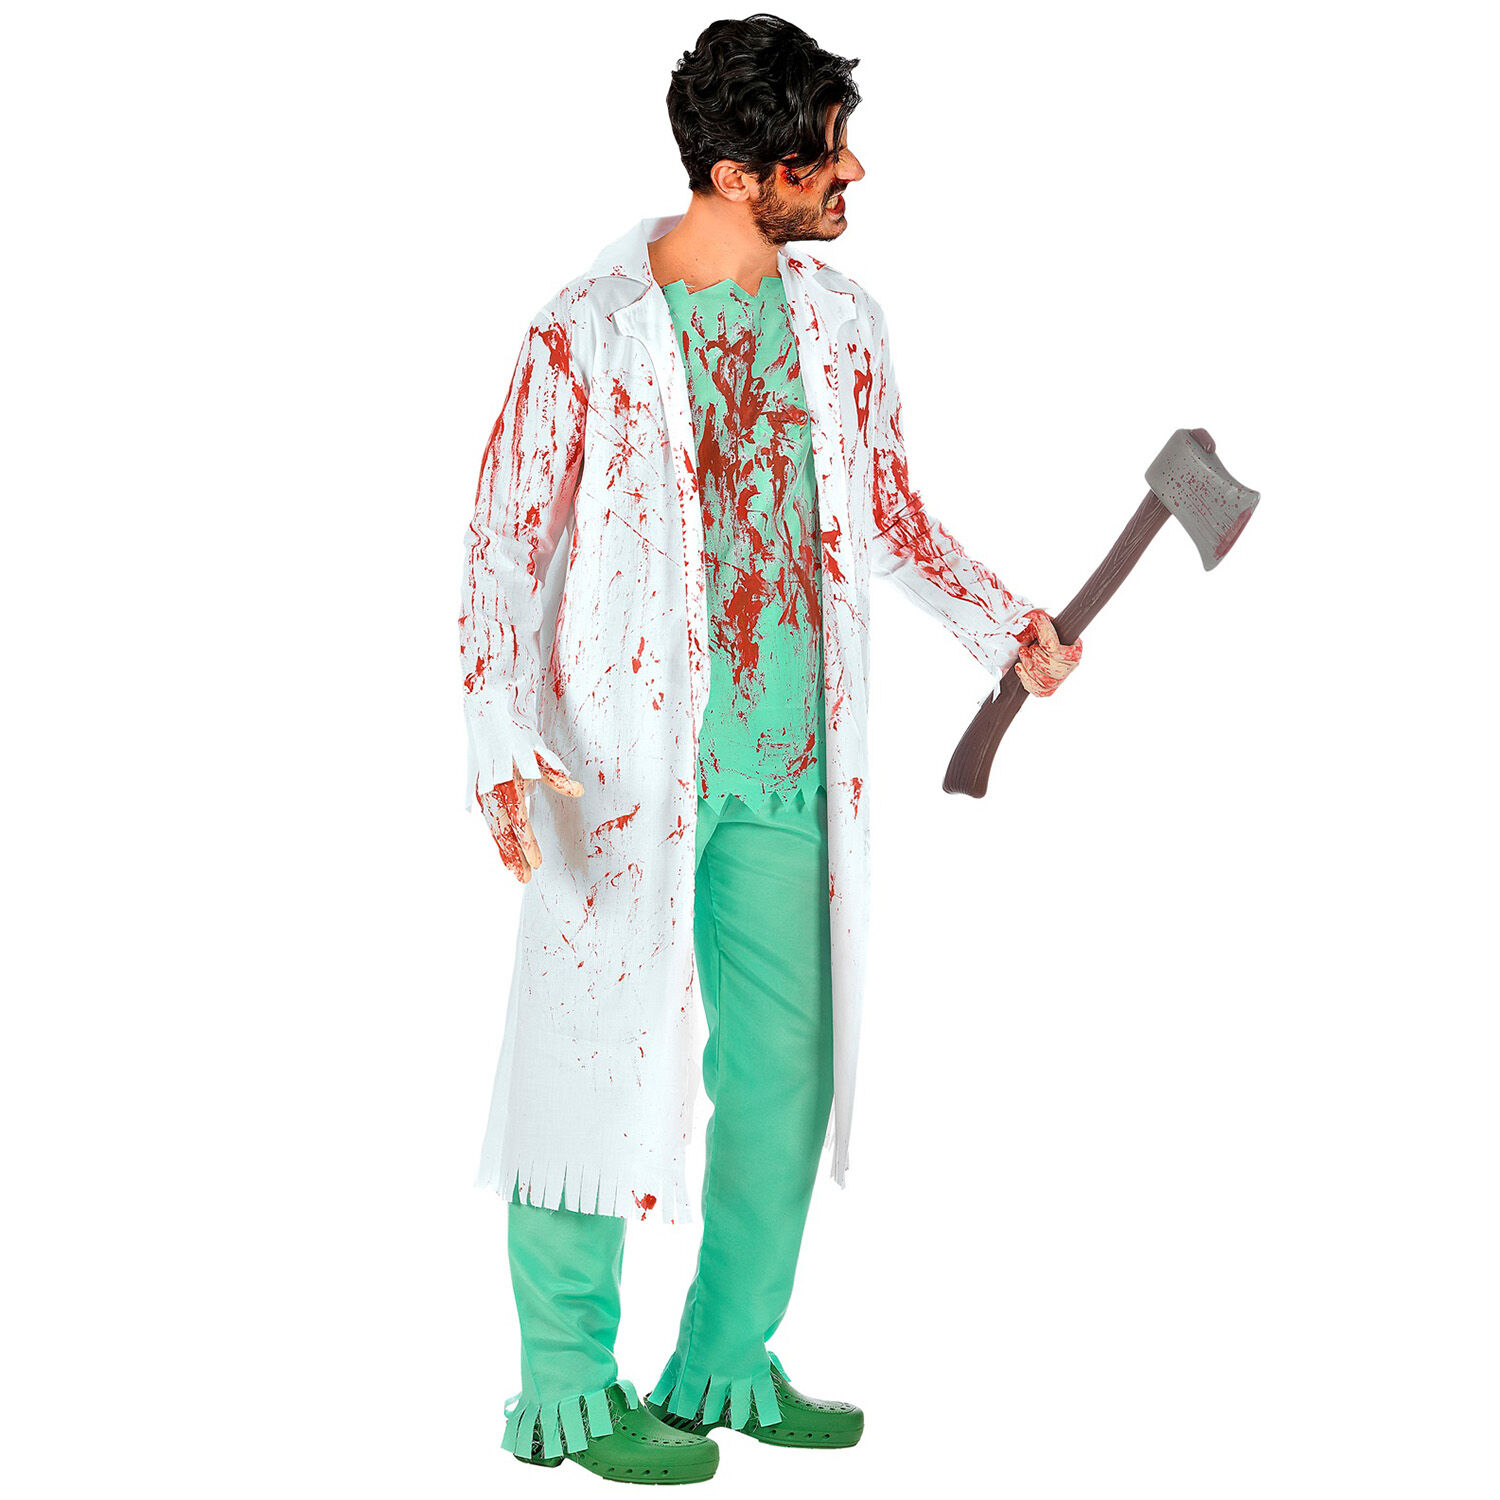 NEU Herren-Kostm Zombie-Arzt, mit Kittel, Hemd, Hose und Handschuhen, Gr. M-L Bild 3